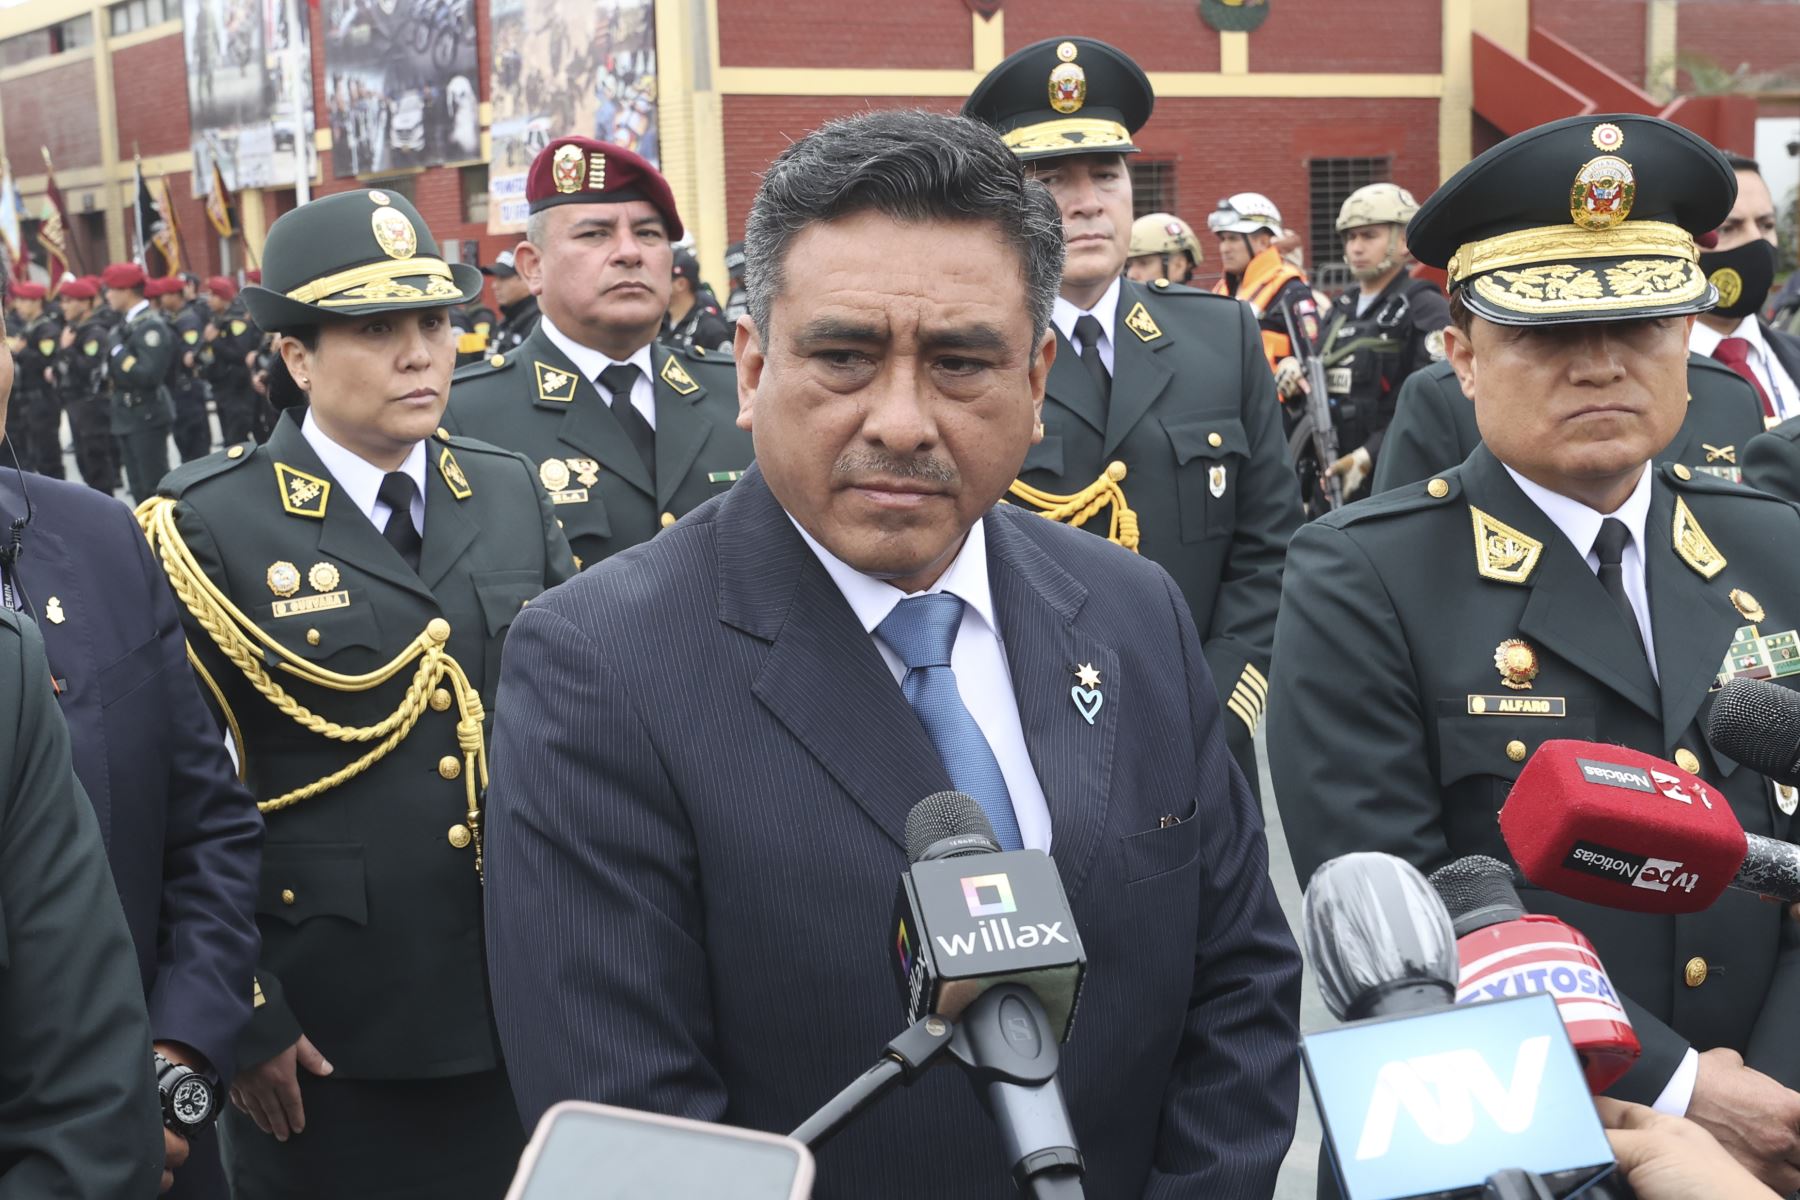 El ministro del Interior, Willy Huerta, declara a la prensa.
Foto: ANDINA/Vidal Tarqui